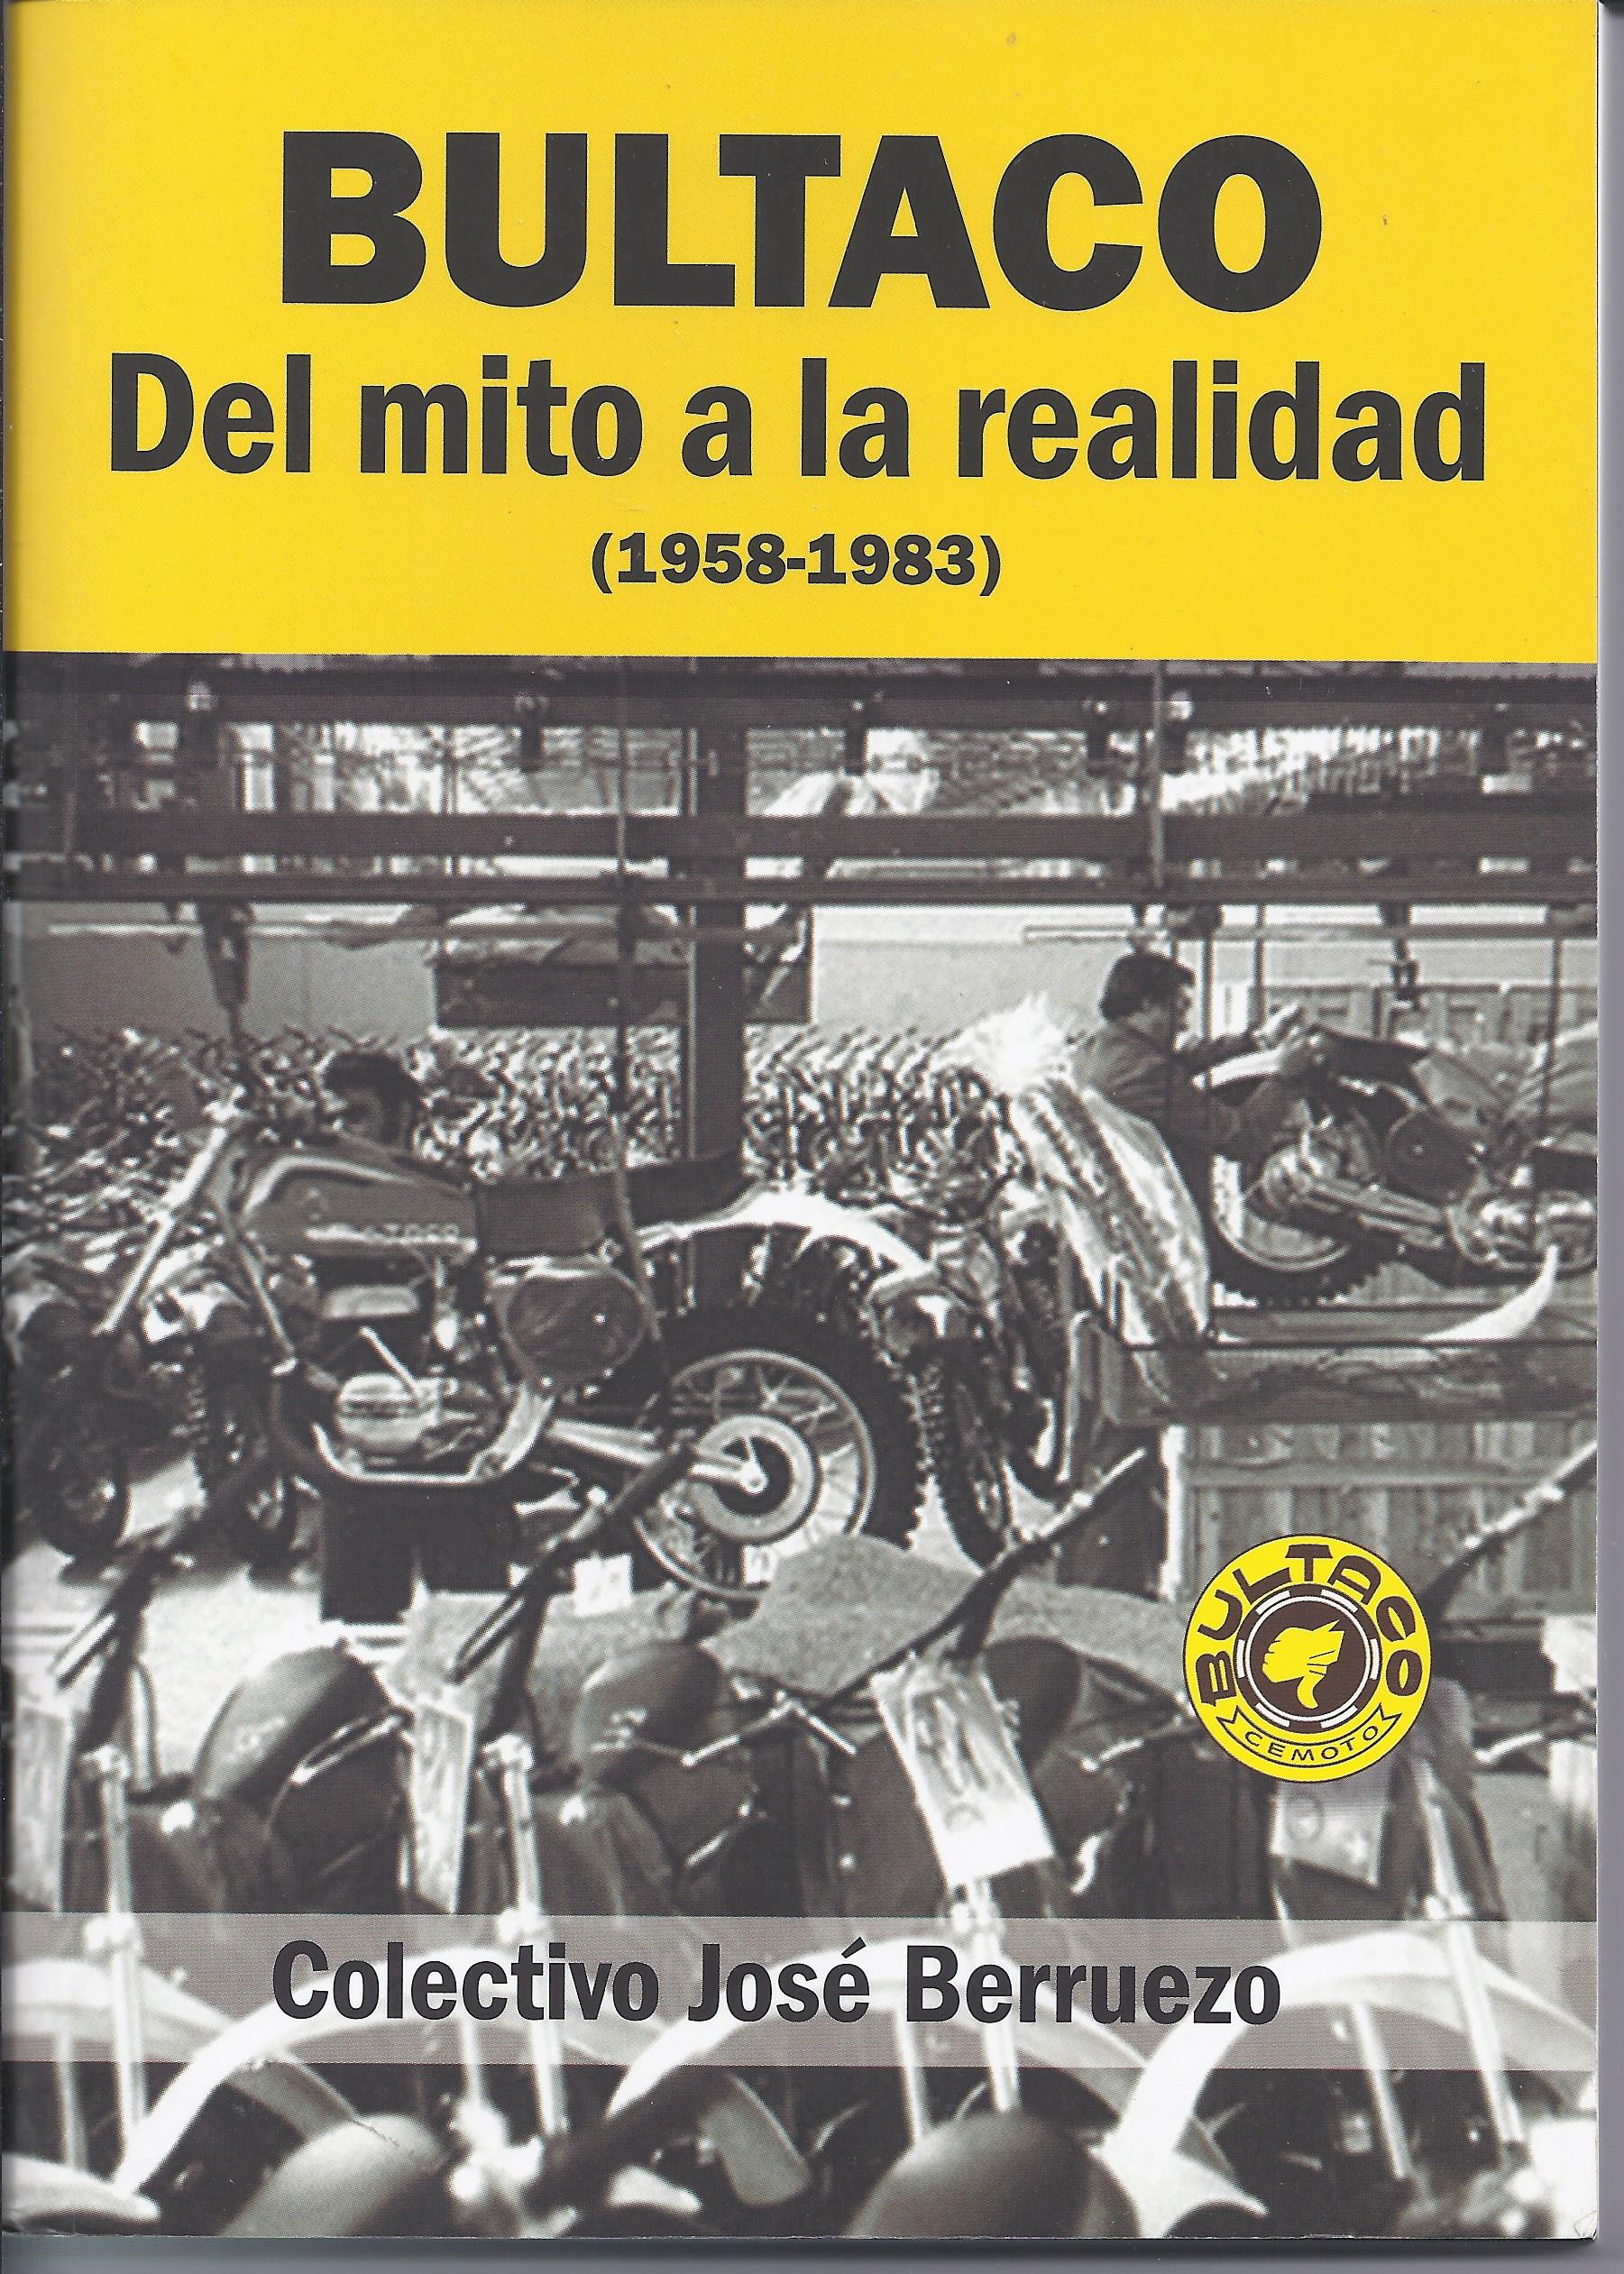 amoros - Rock para principiantes, uno de los libros de Miguel Amorós (historia sociopolítica del rock) Llibre_bultaco